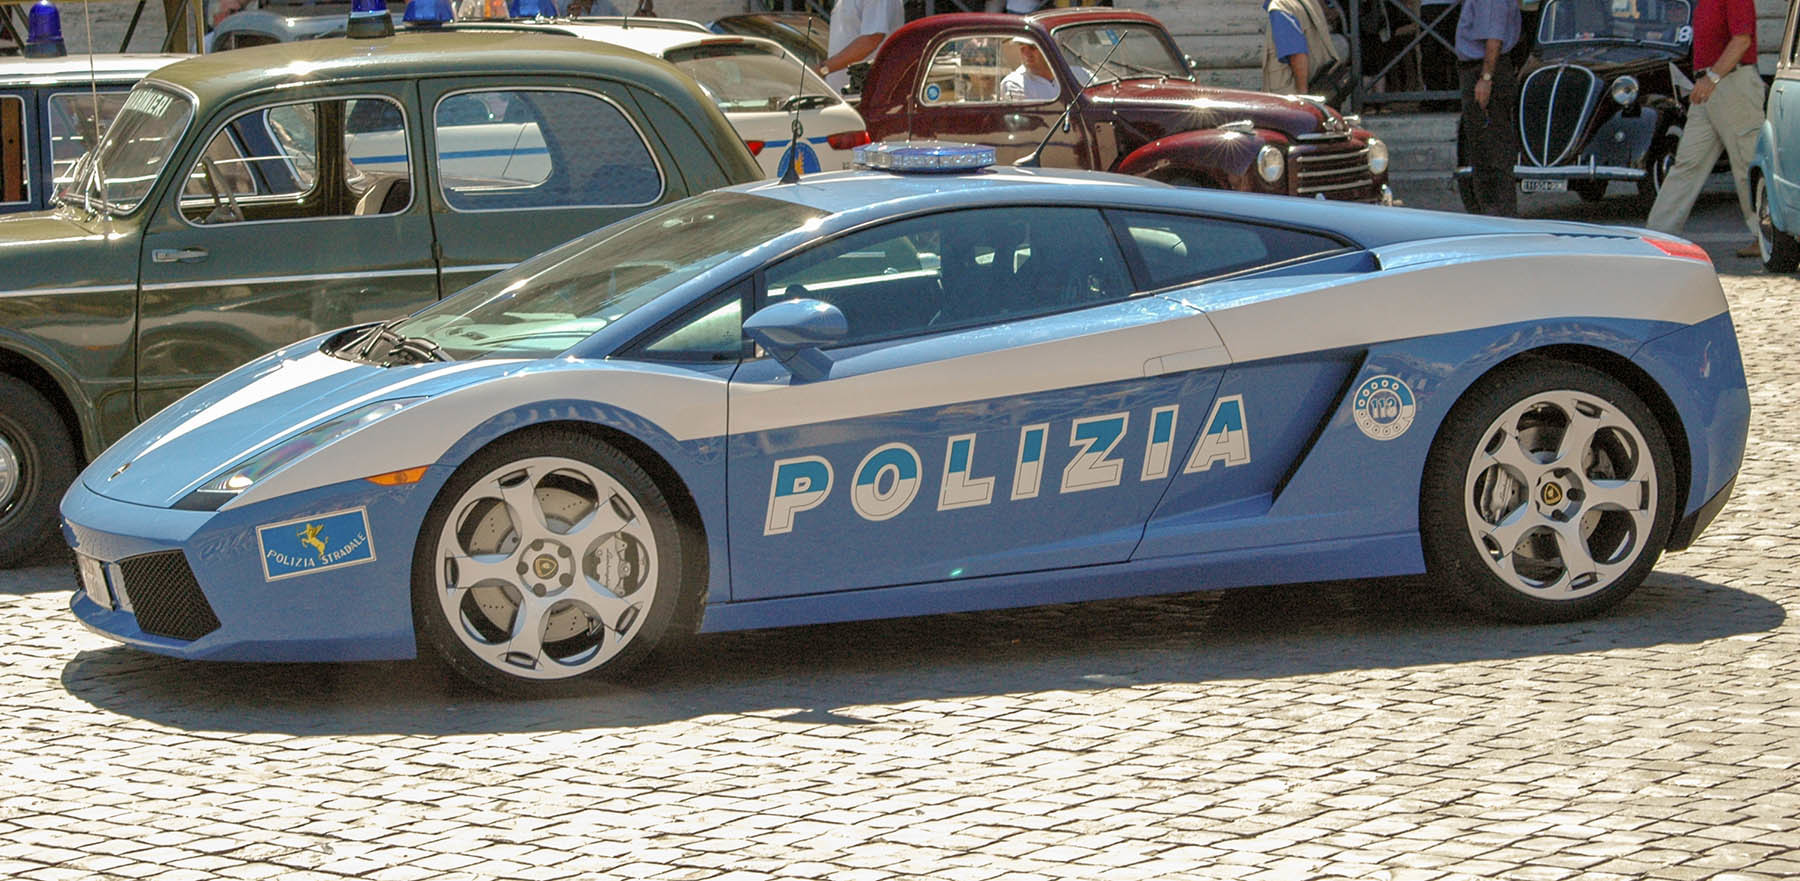 Radiowów Lamborghini włoskiej policji autostradowej